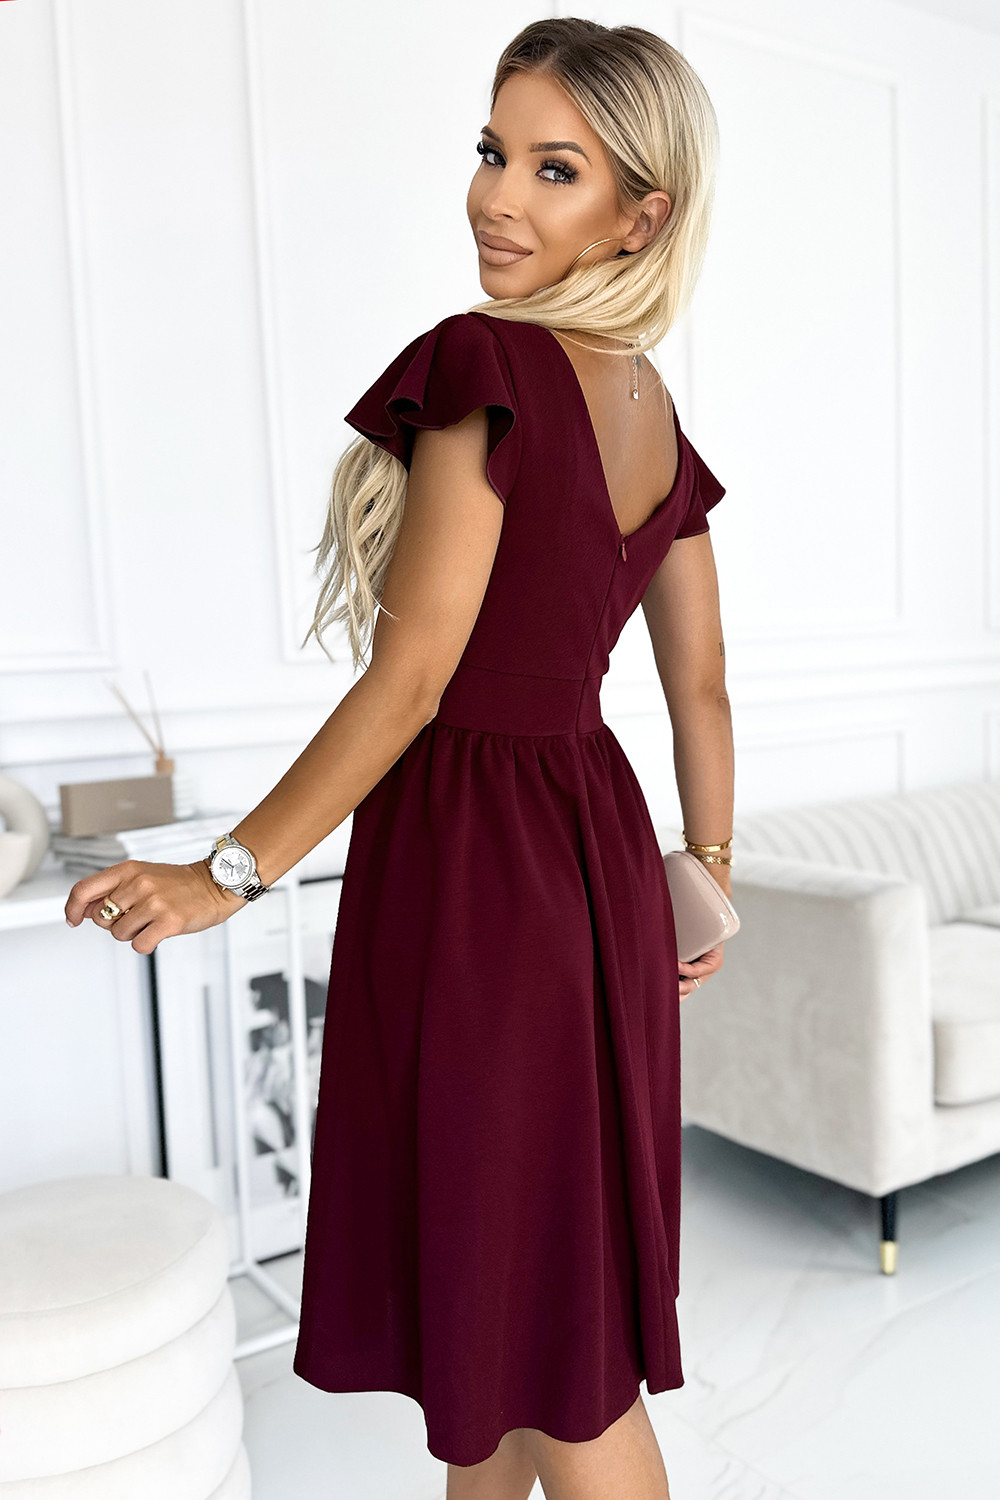 MATILDE - Dámské šaty ve vínové bordó barvě s výstřihem a krátkými rukávy 425-4 L